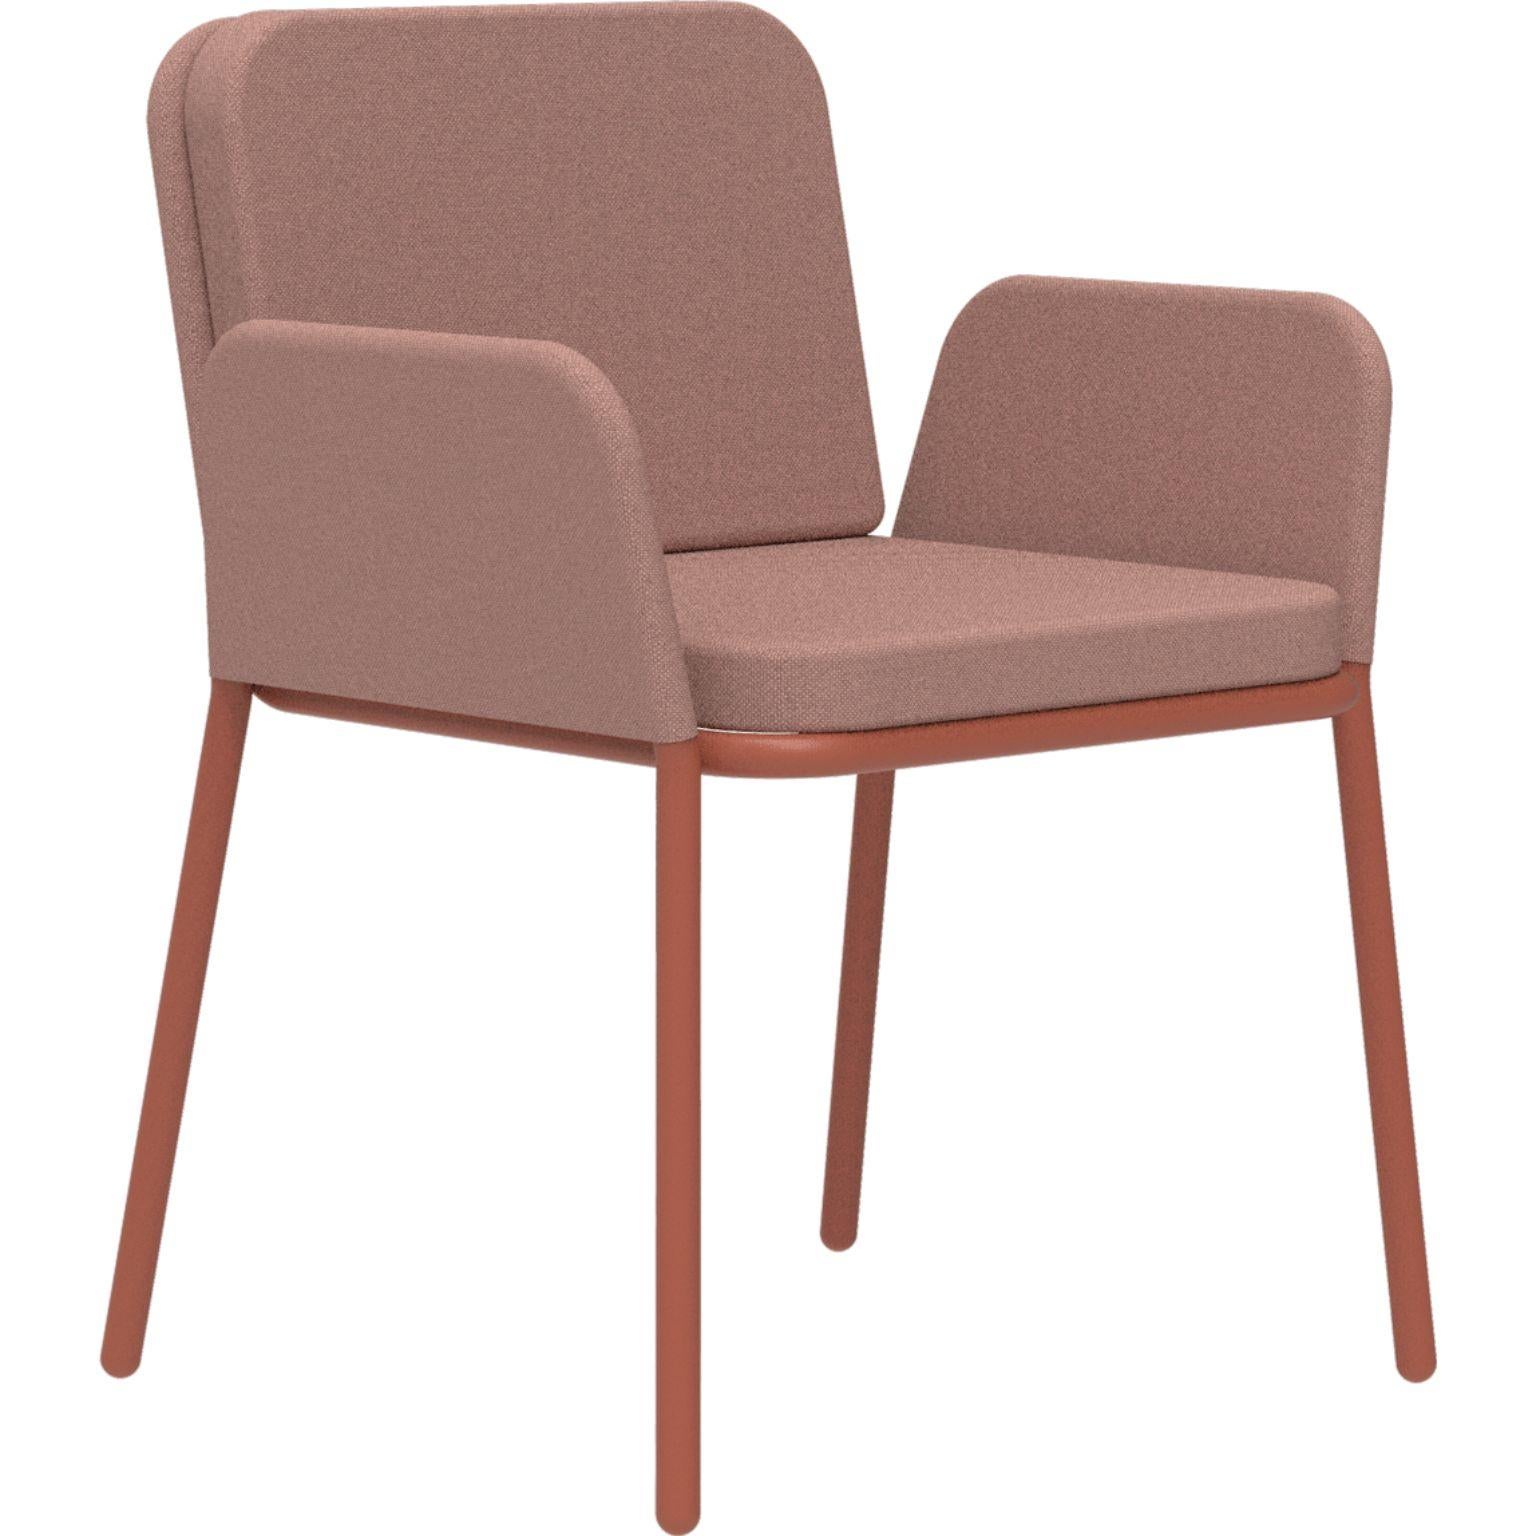 Bezug Lachs-Sessel von Mowee
Abmessungen: T60 x B62 x H83 cm (Sitzhöhe 48 cm)
MATERIAL: Aluminium und Polstermöbel.
Gewicht: 5 kg.
Auch in verschiedenen Farben und Ausführungen erhältlich.

Eine Collection'S, die durch ihre Schönheit und Robustheit